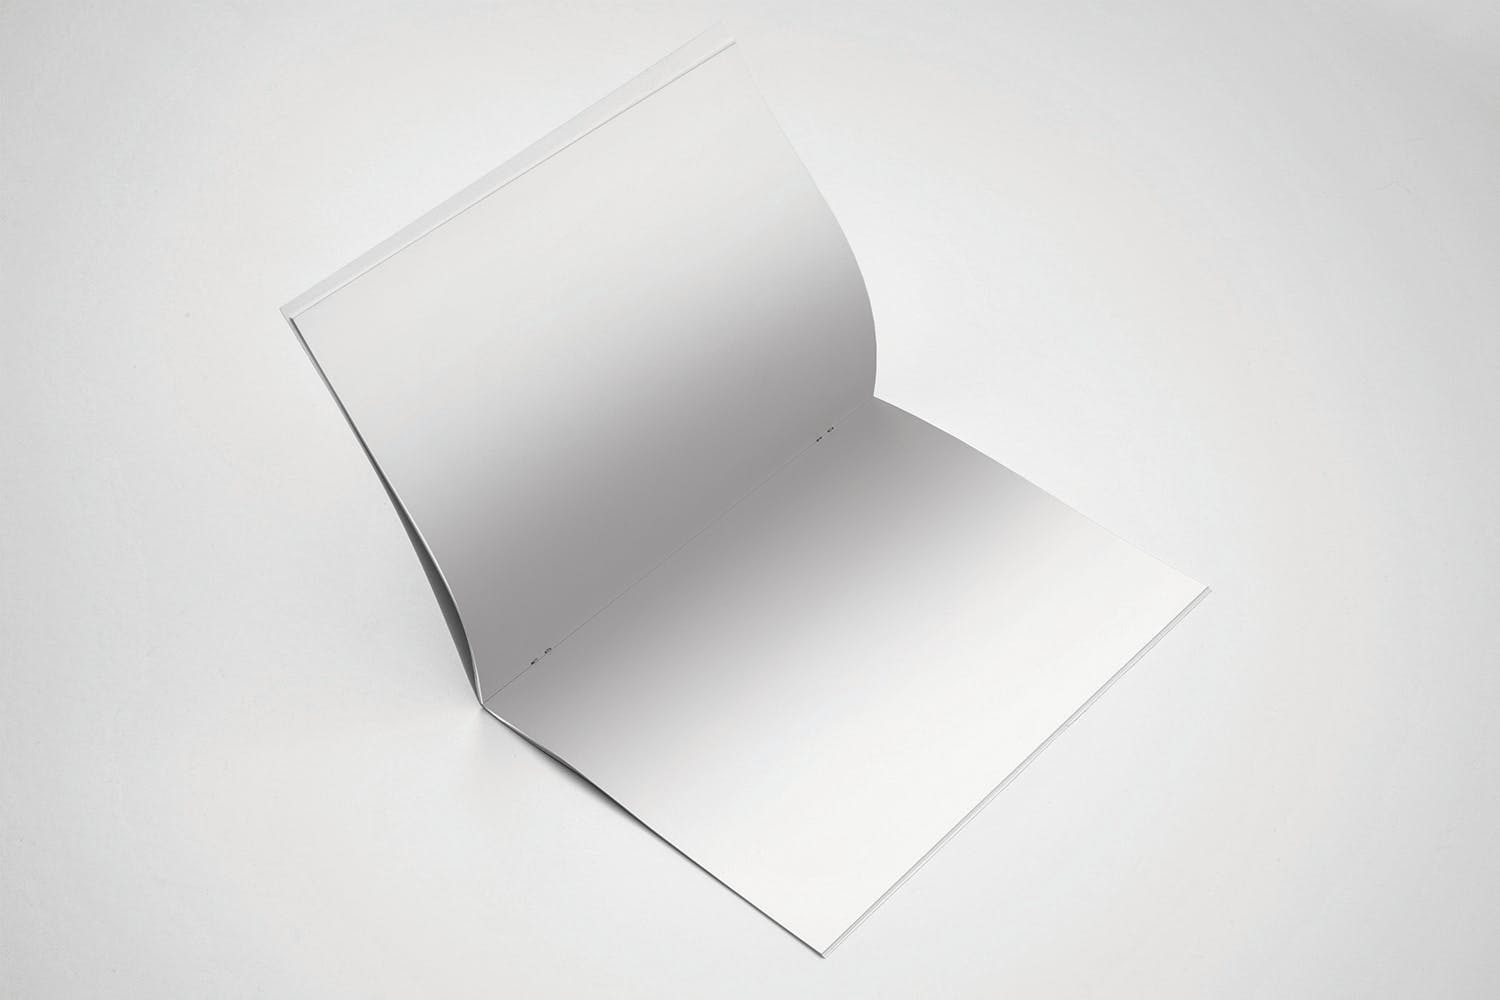 美国信纸规格宣传册翻页效果图样机第一素材精选 US Letter Brochure Mockup Open Page插图(1)